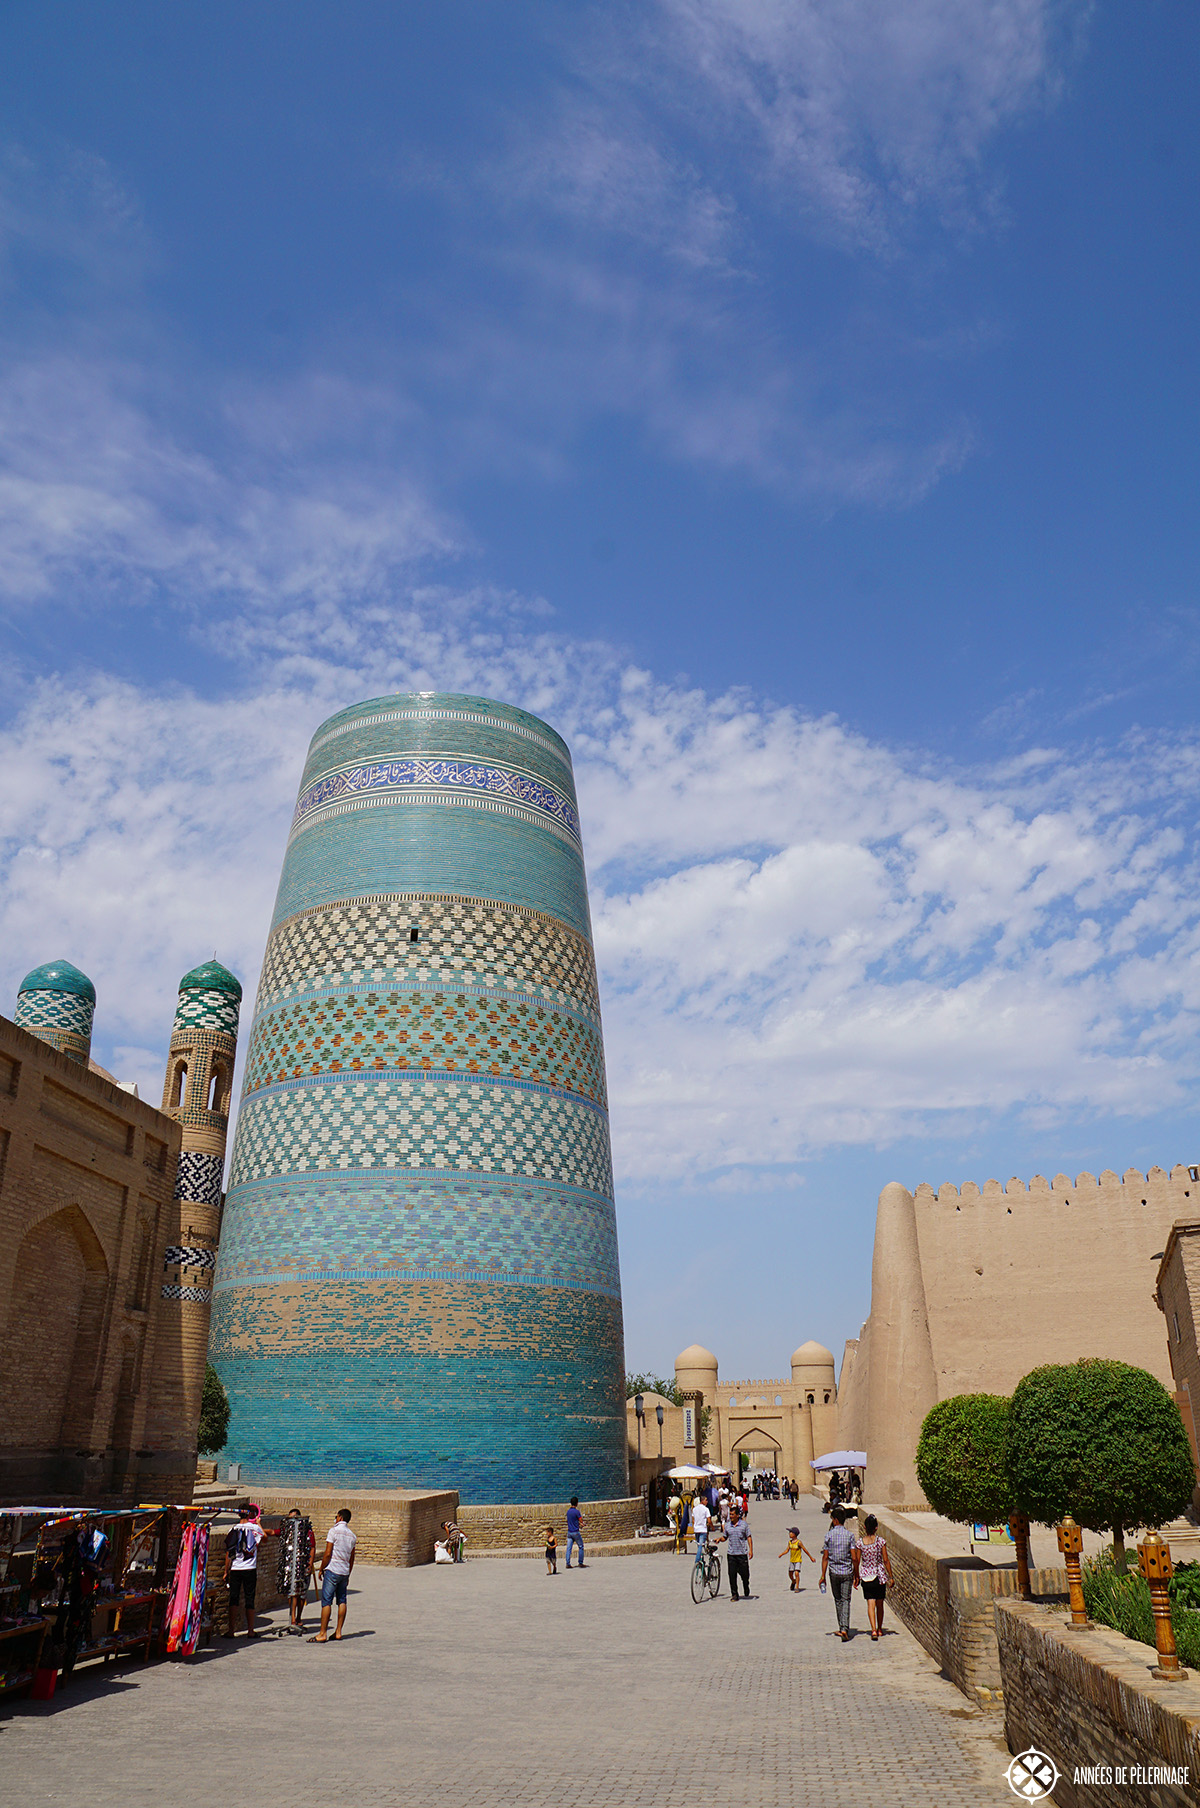 The Kalta Minor Minaret in Khiva, Uzbekistan